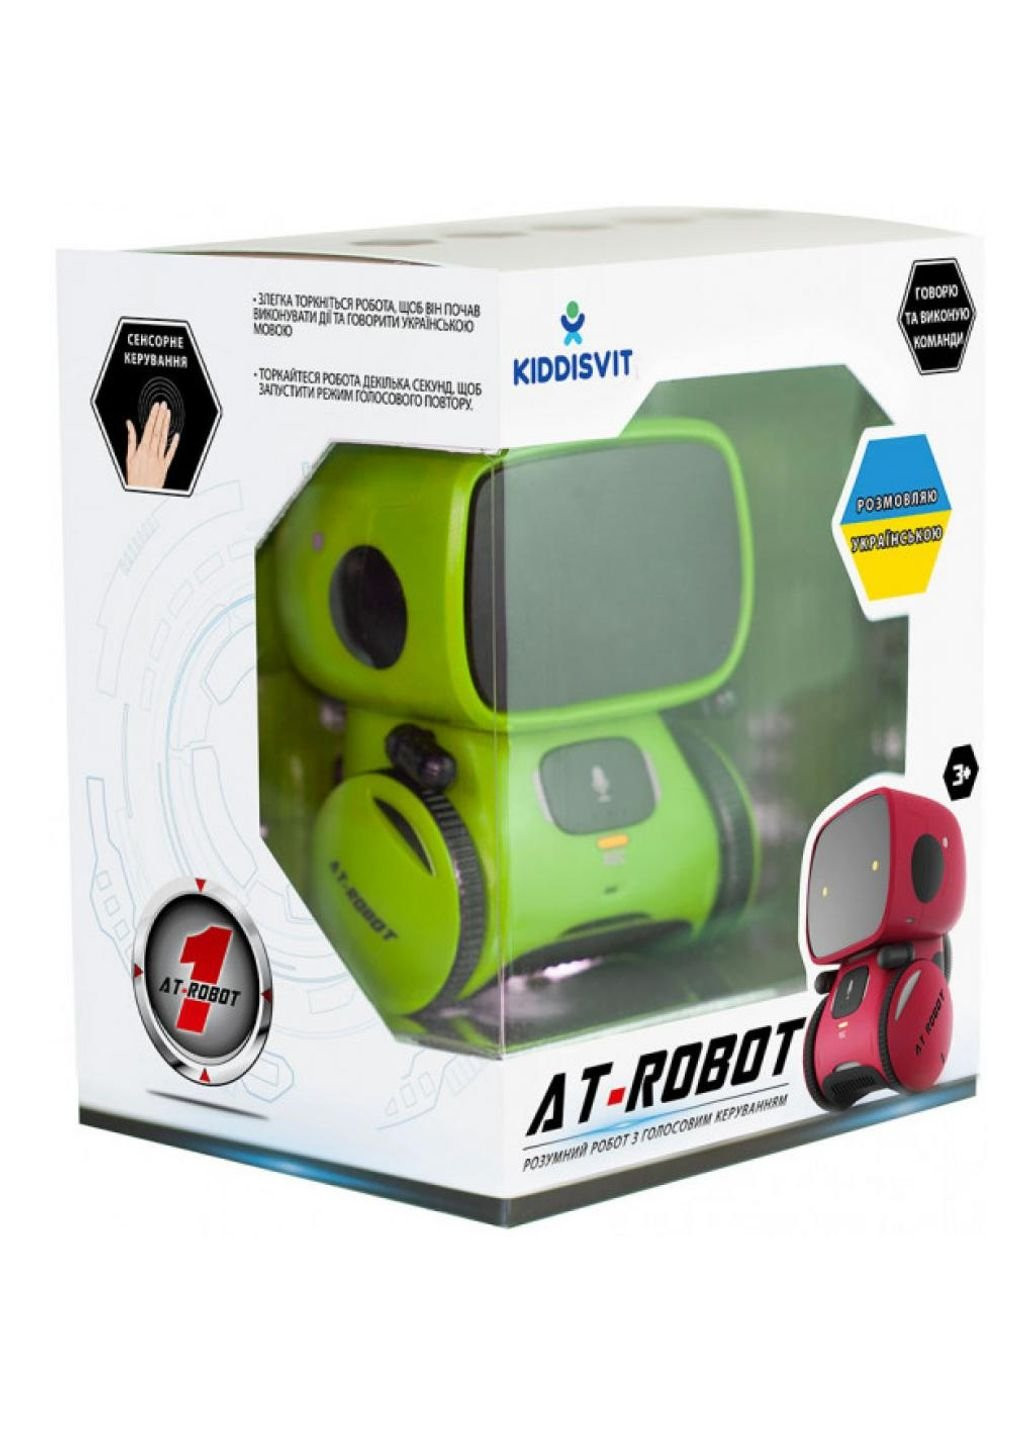 Інтерактивний робот іграшковий робот з голосовим контролем Green, UKR (AT001-02-UKR) AT-Robot (252147982)